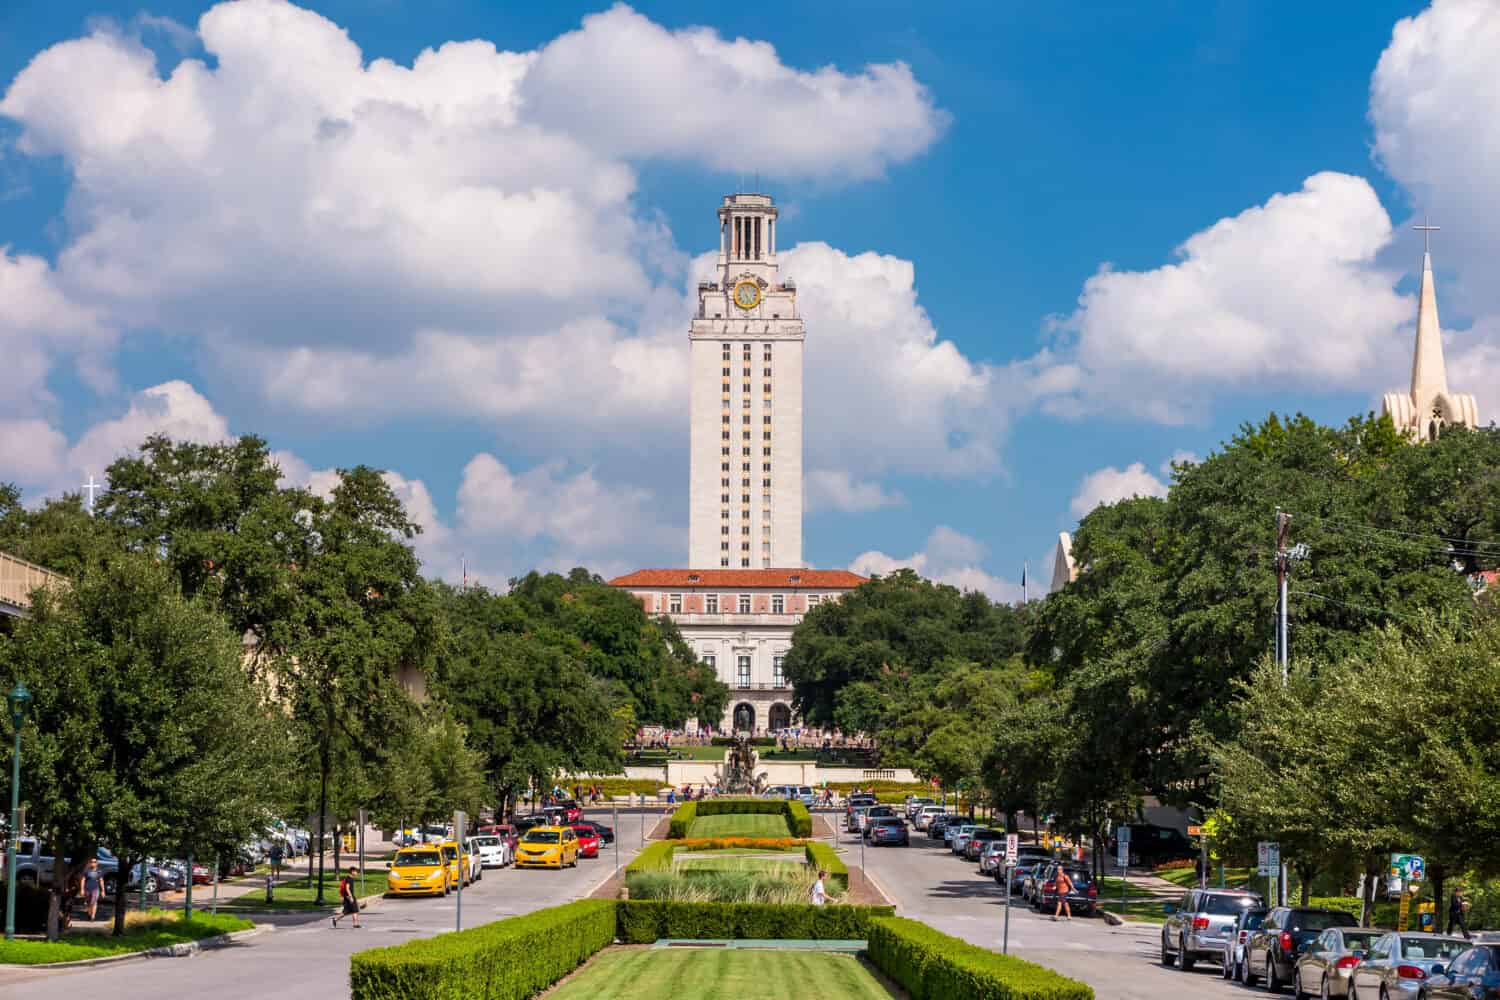  University of Texas (UT) against blue sky in Austin, Texas 